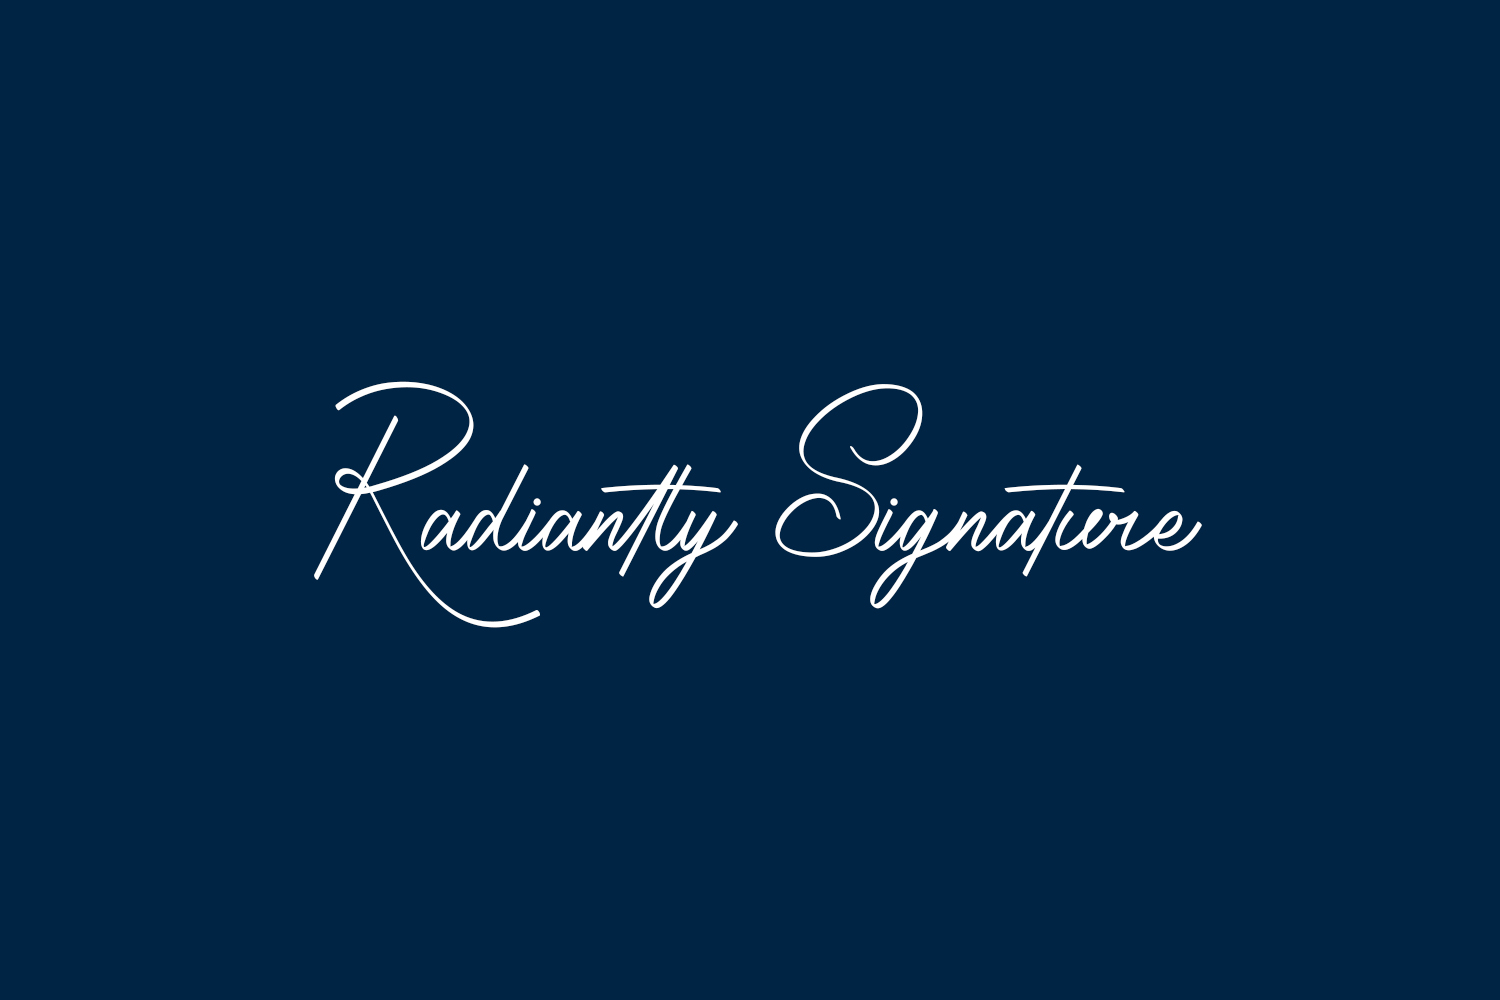 Radiantly Signature Free Font